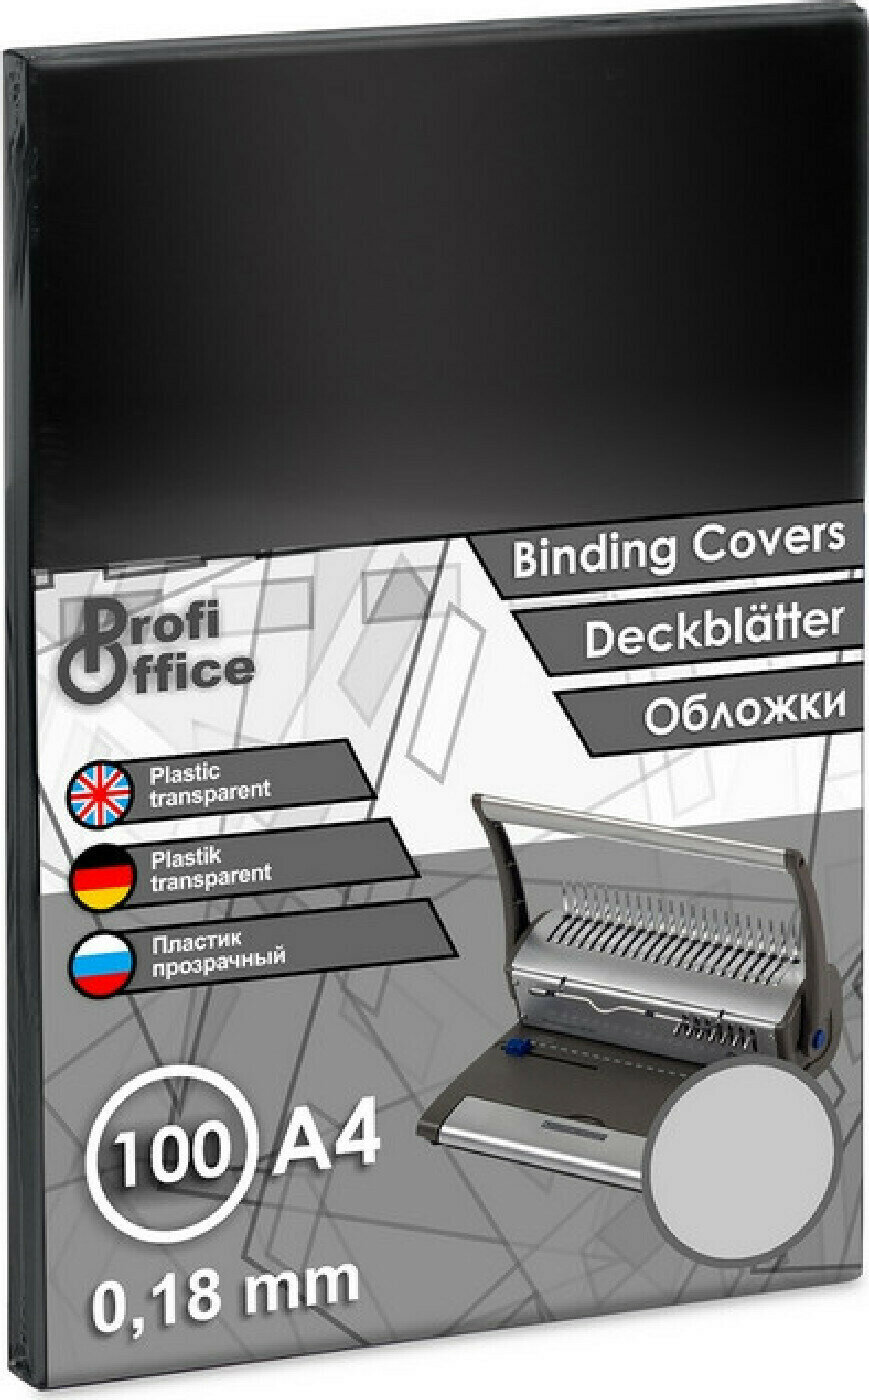 Обложка для переплета Обложки для переплета пластиковые ProfiOffice прозрачный А4 180 микрометров 100 штук в упаковке